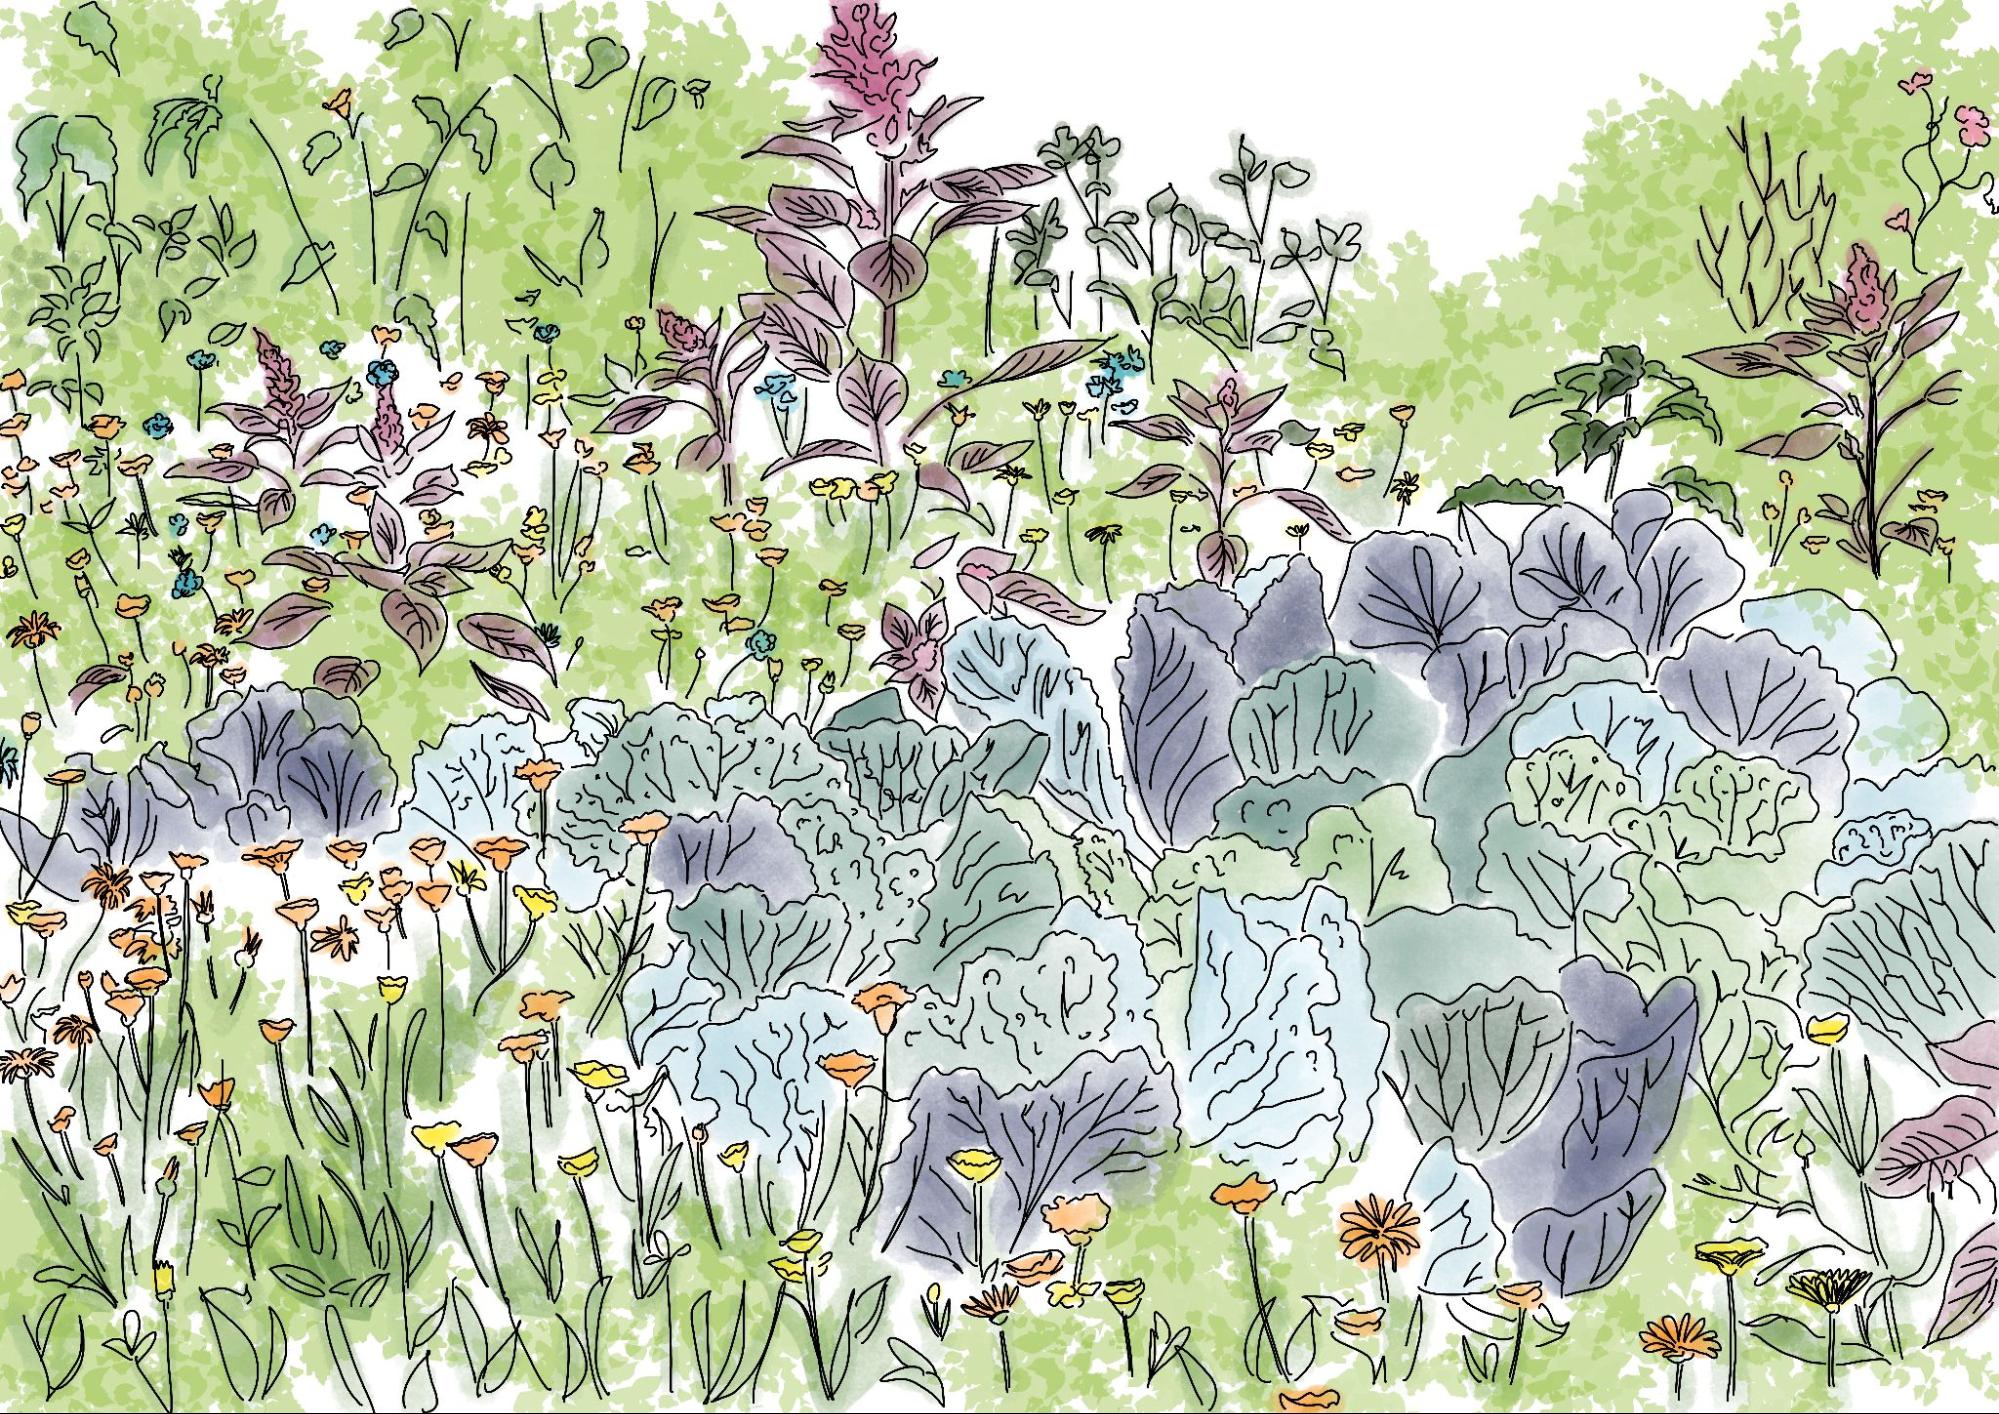 Fleurs à bulbes - Jardiner Malin : jardinage et recettes de saison